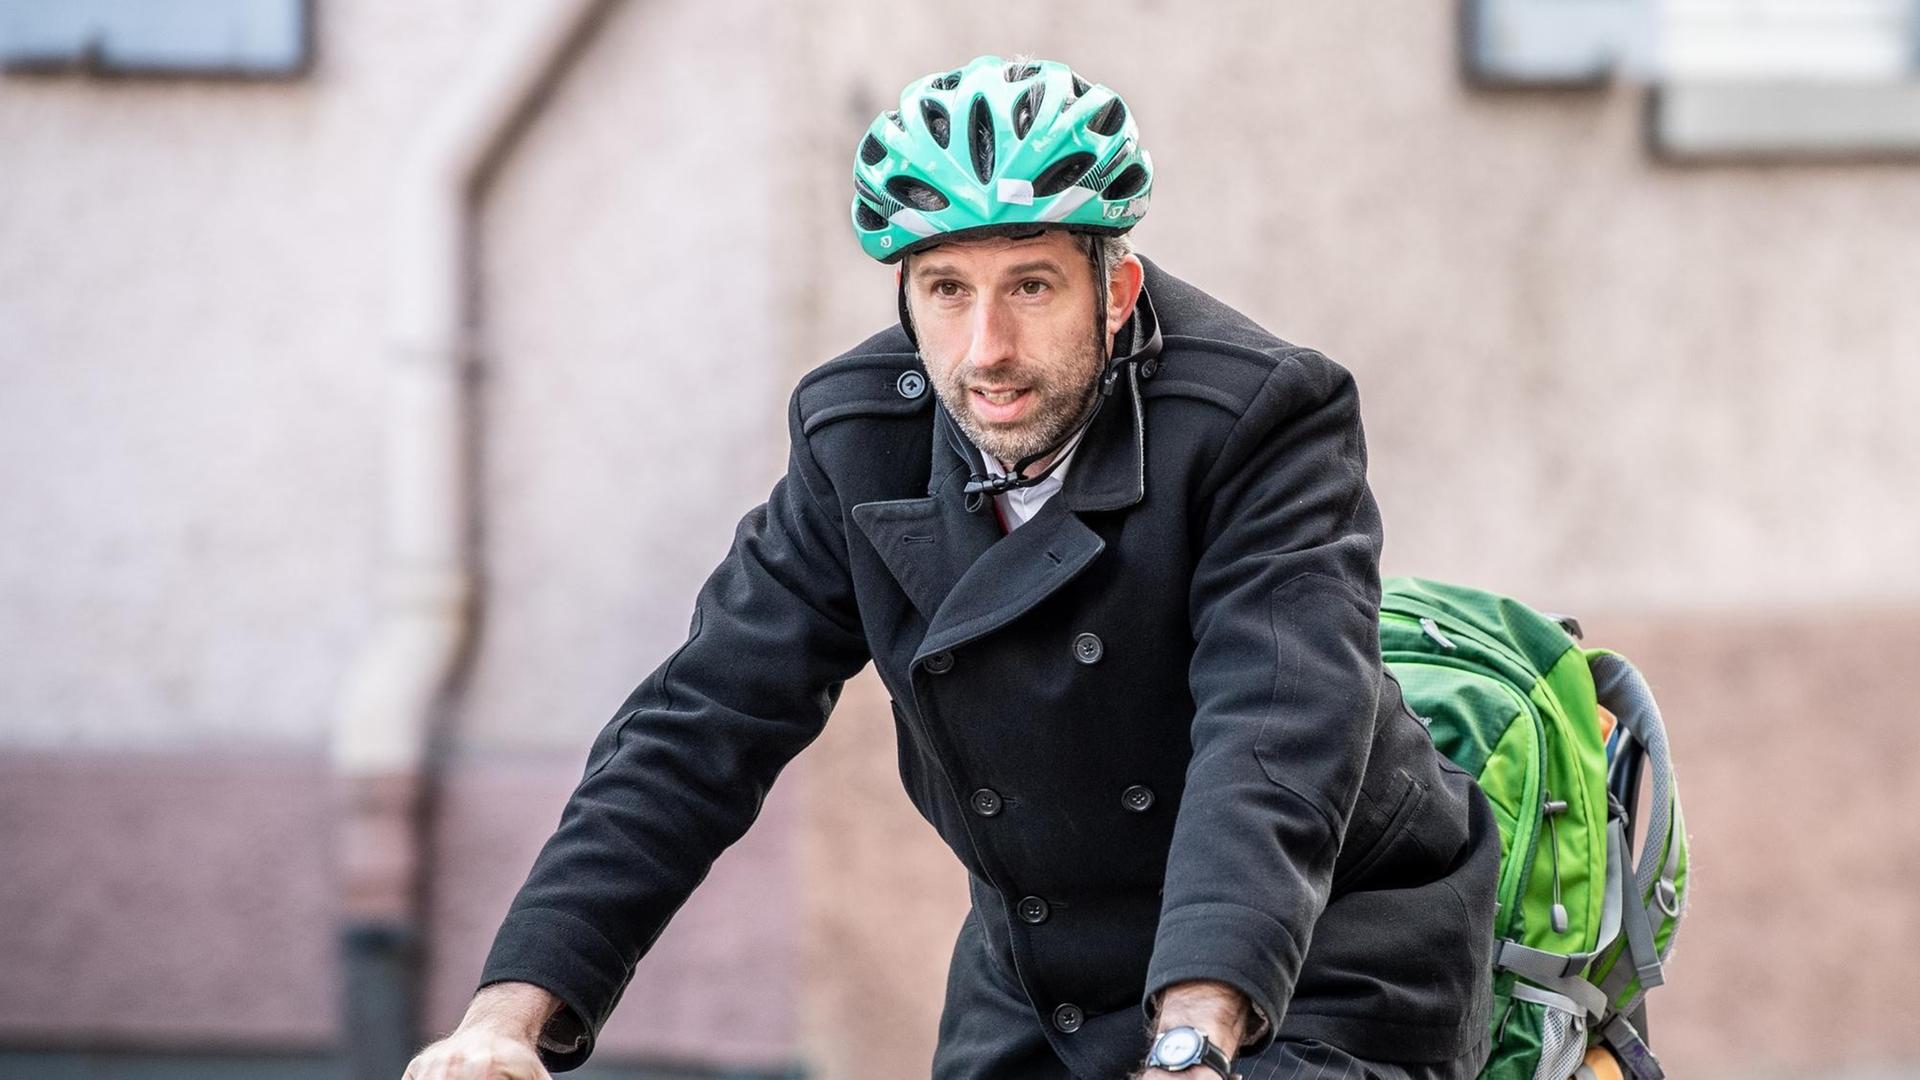 Boris Palmer, Oberbürgermeister von Tübingen (Bündnis 90/Die Grünen), kommt mit einem grünen Helm auf dem Kopf mit dem Fahrrad zu einer Demonstration vor der Landesversorgungsanstalt der Ärzte.